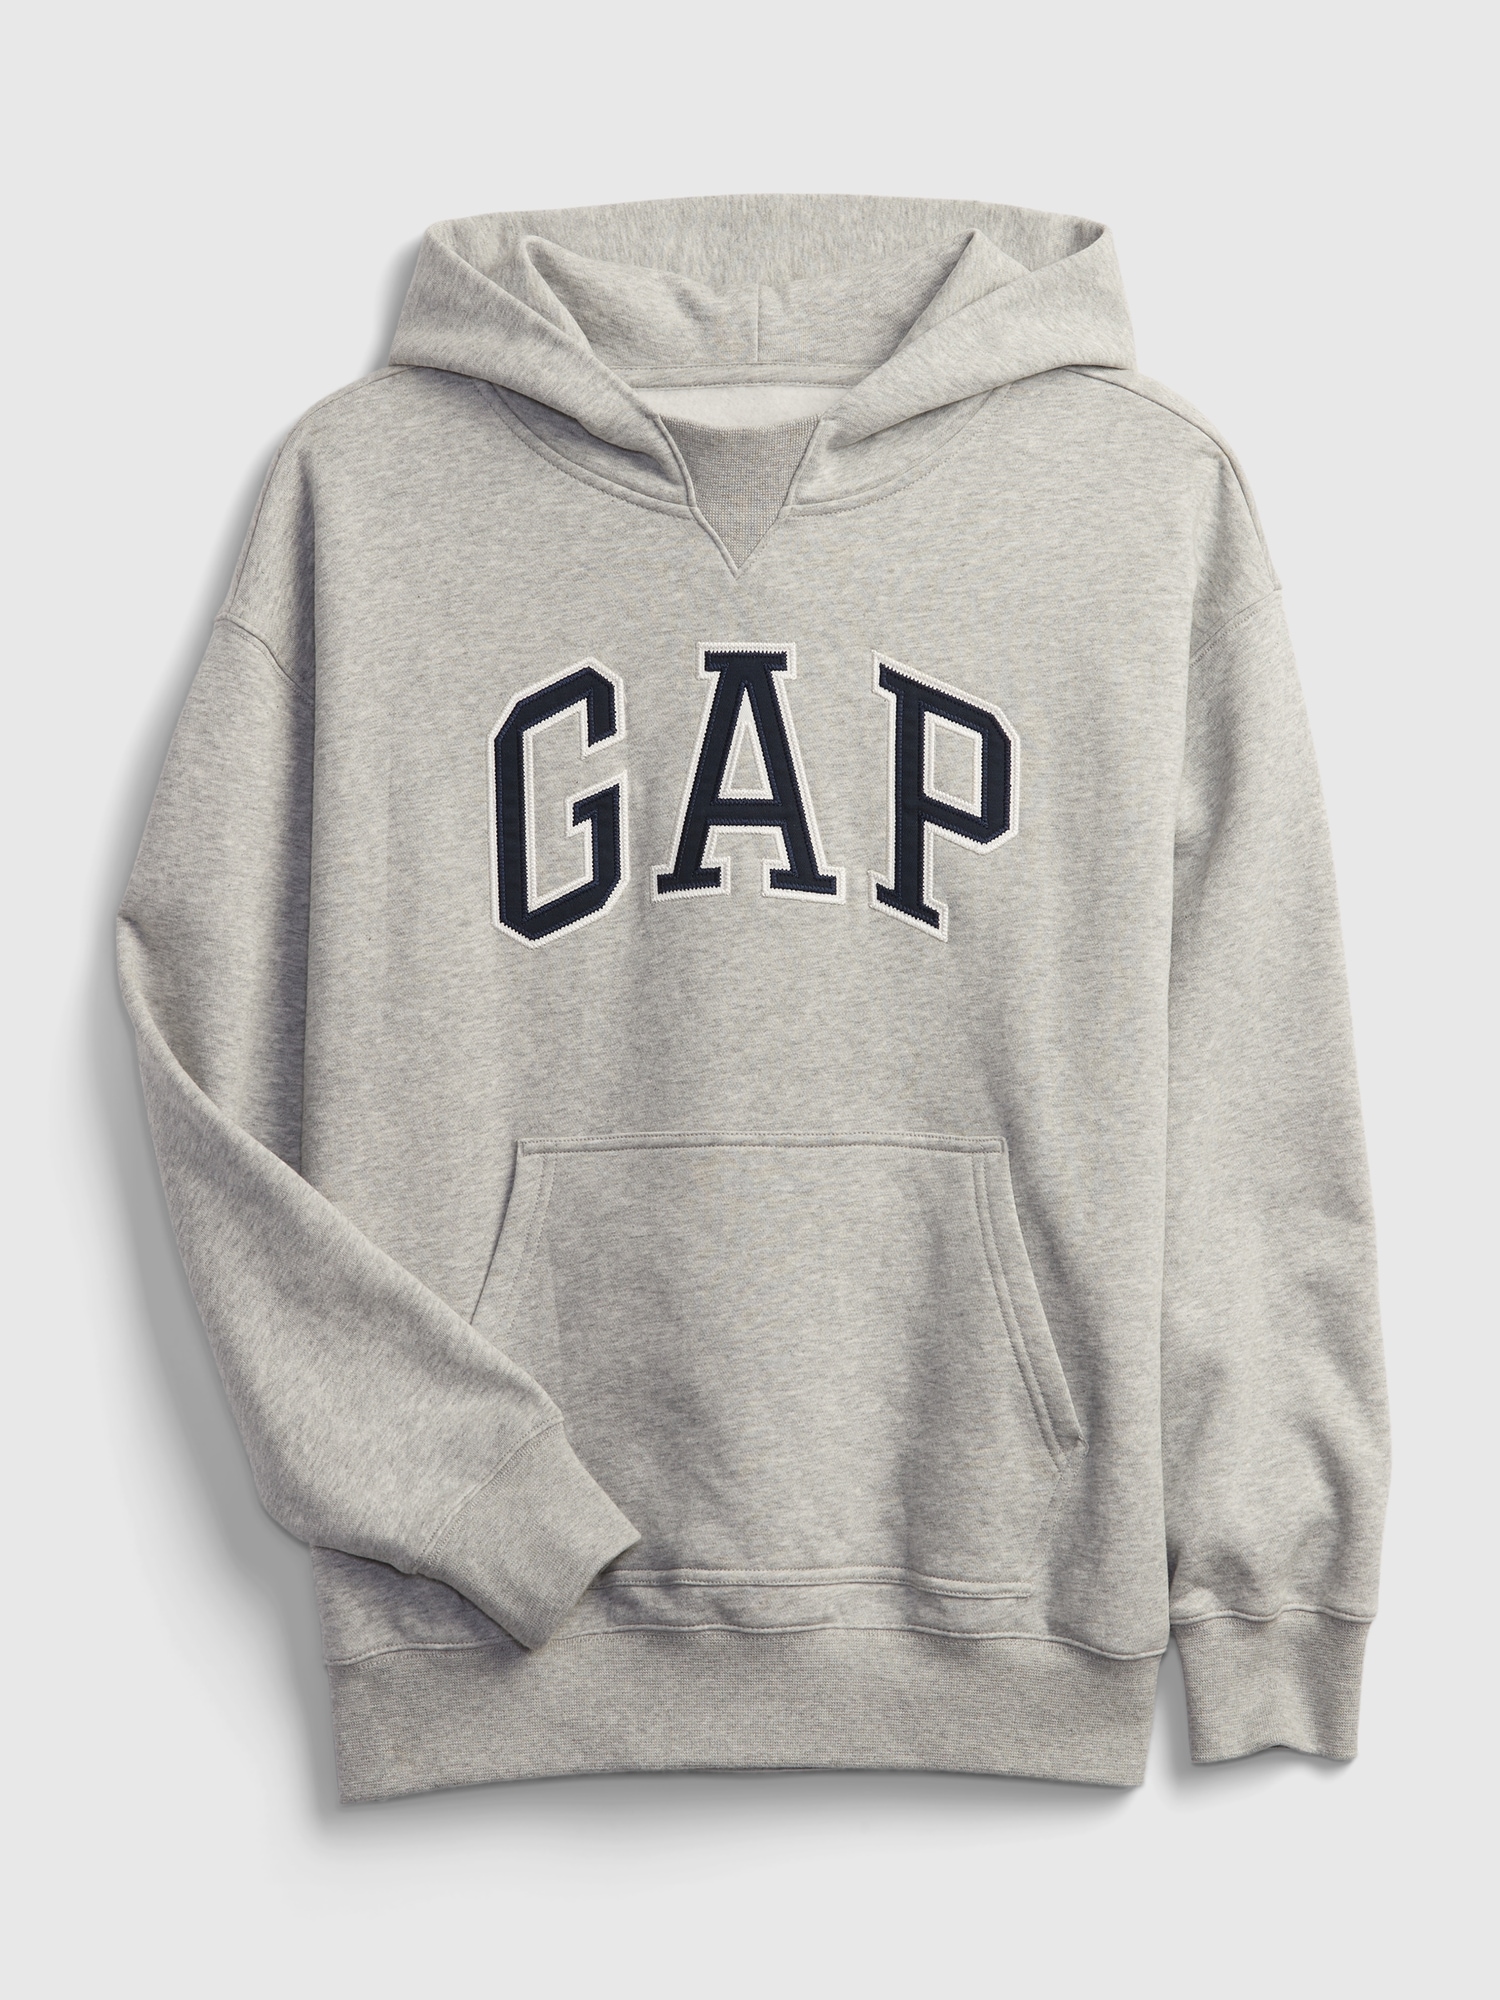 Teen Gap Logo Hoodie | Gap